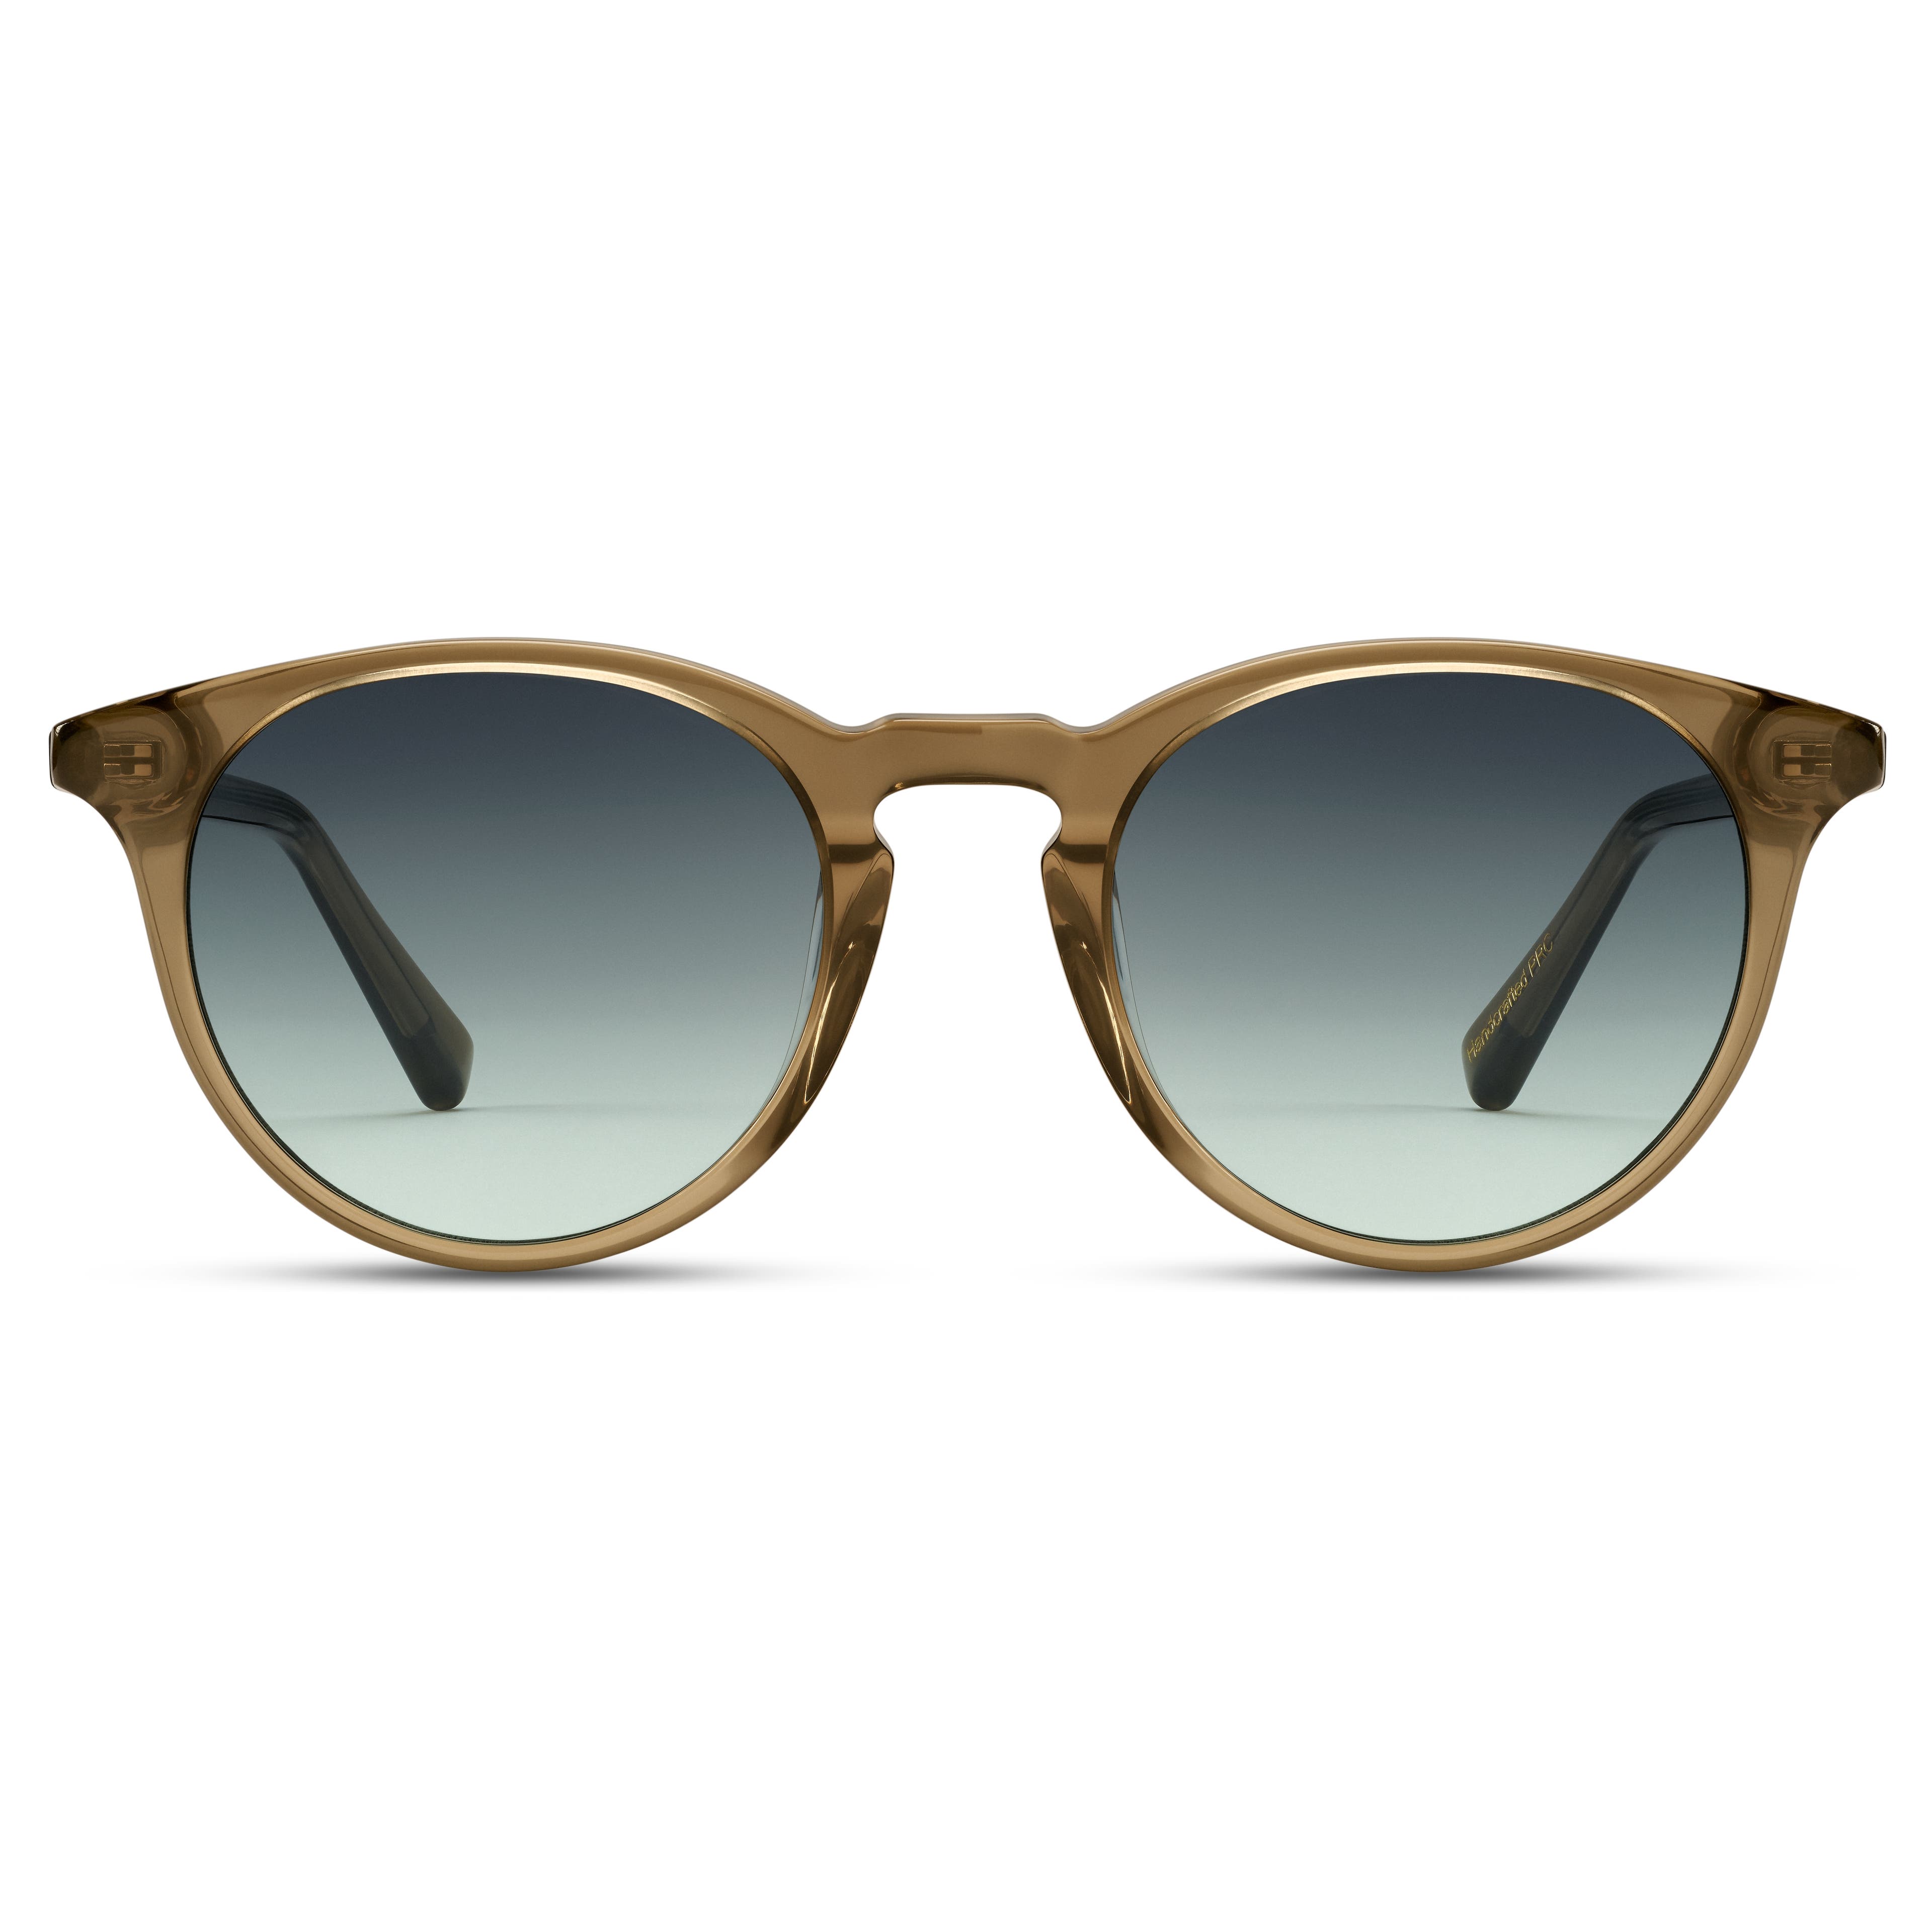  Кръгли бутилково-зелени слънчеви очила New Depp с плътни рамки